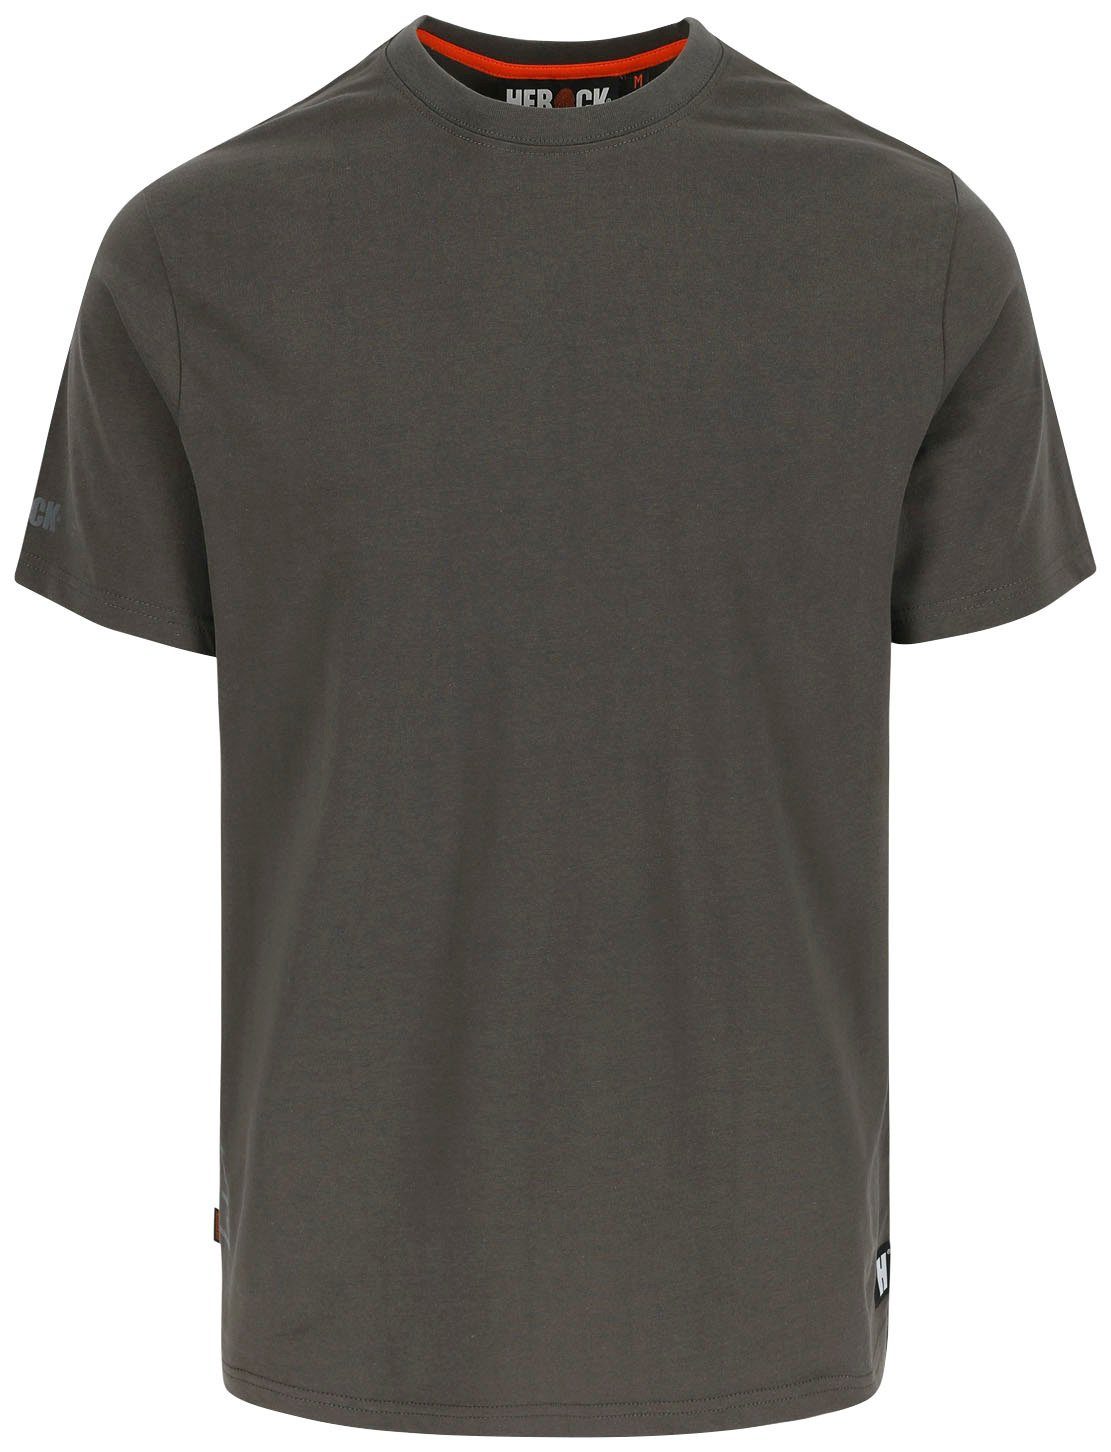 Herock T-Shirt Callius T-Shirt Rippstrickkragen Ärmel Herock®-Aufdruck, Rundhalsausschnitt, kurze Ärmel, kurze grau